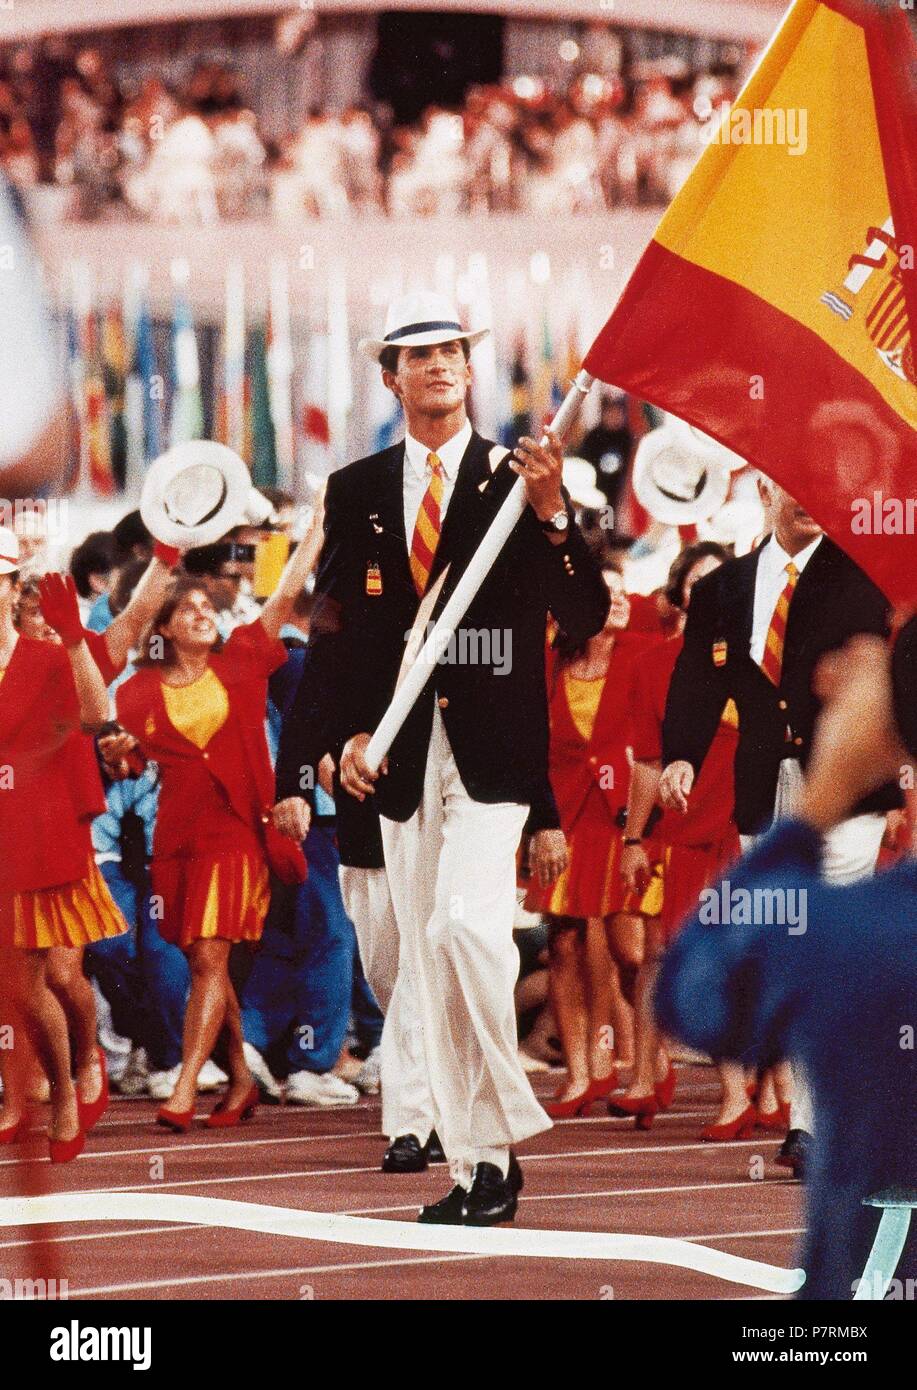 juegos-olimpicos-de-barcelona-1992-el-principe-felipe-de-borbon-el-abanderado-del-equipo-olimpico-espanol-desfilando-en-la-ceremonia-inaugural-de-los-juegos-el-25-de-julio-de-1992-en-el-estadio-olimpico-fundacio-barcelona-olimpica-barcelona-cataluna-p7rmbx.jpg